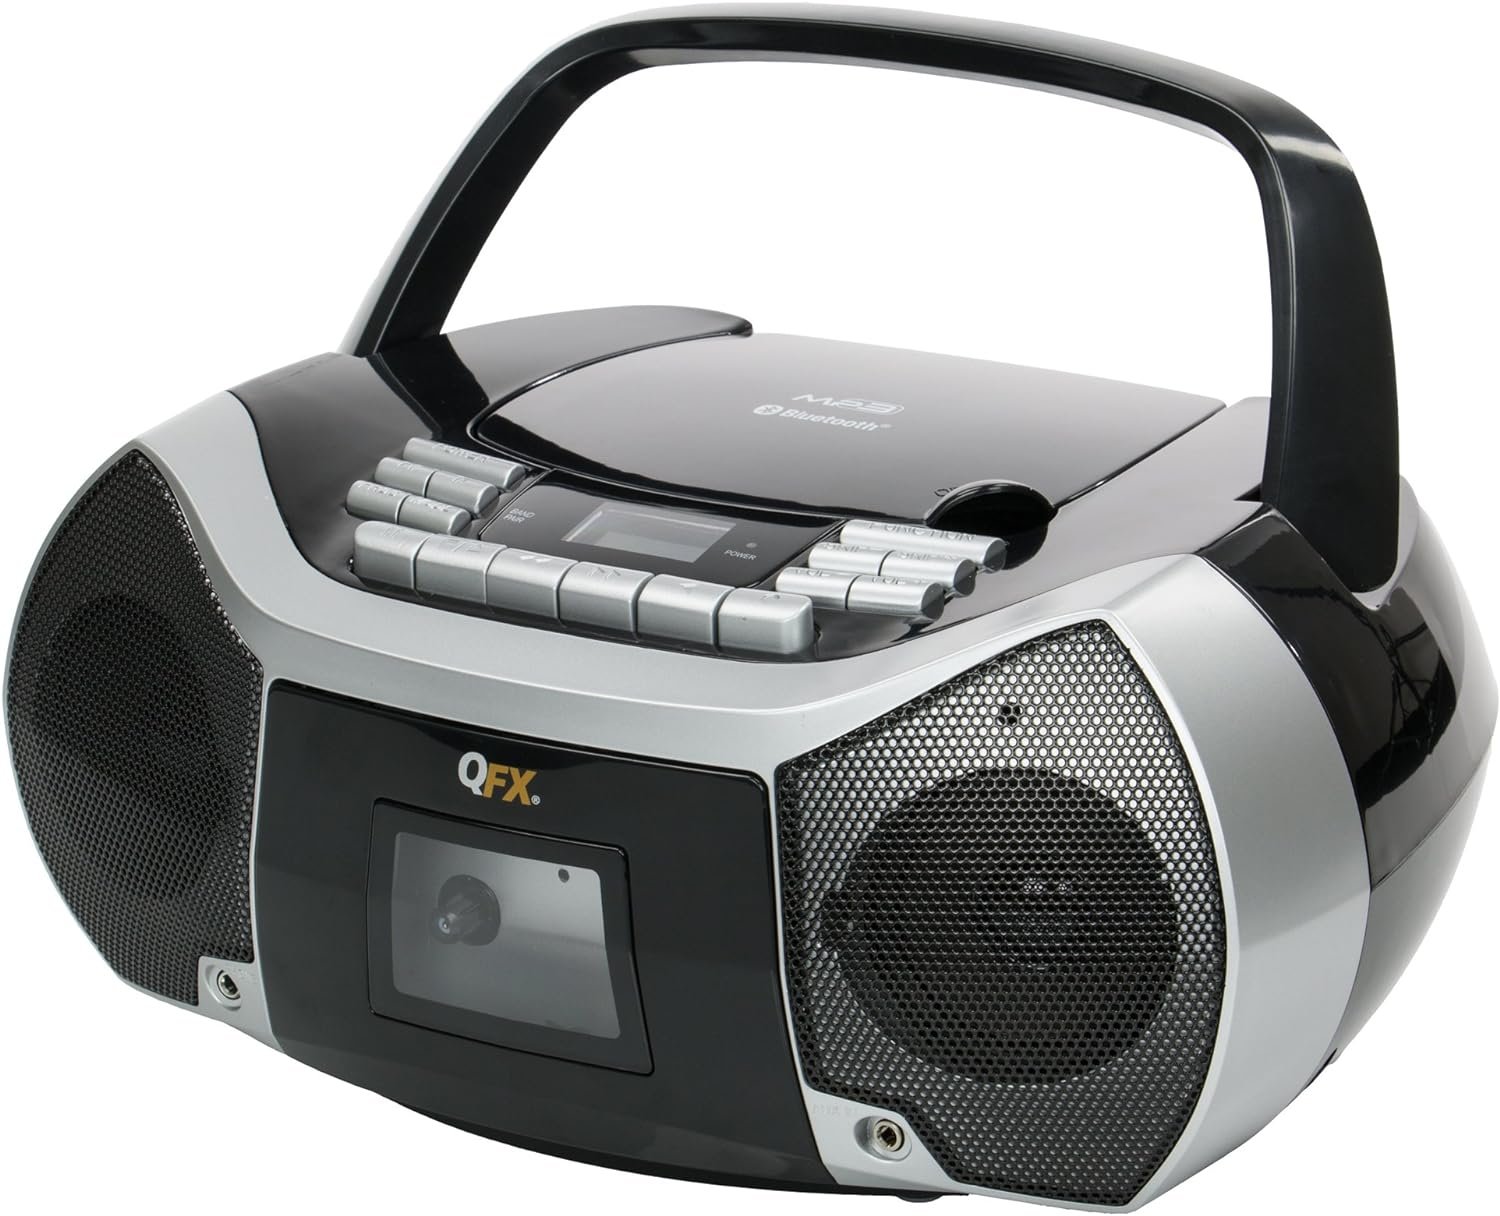 Boombox BX-1112k. Бумбокс магнитофон, с пультом. XING bao магнитофон. Philips Boombox Bluetooth.